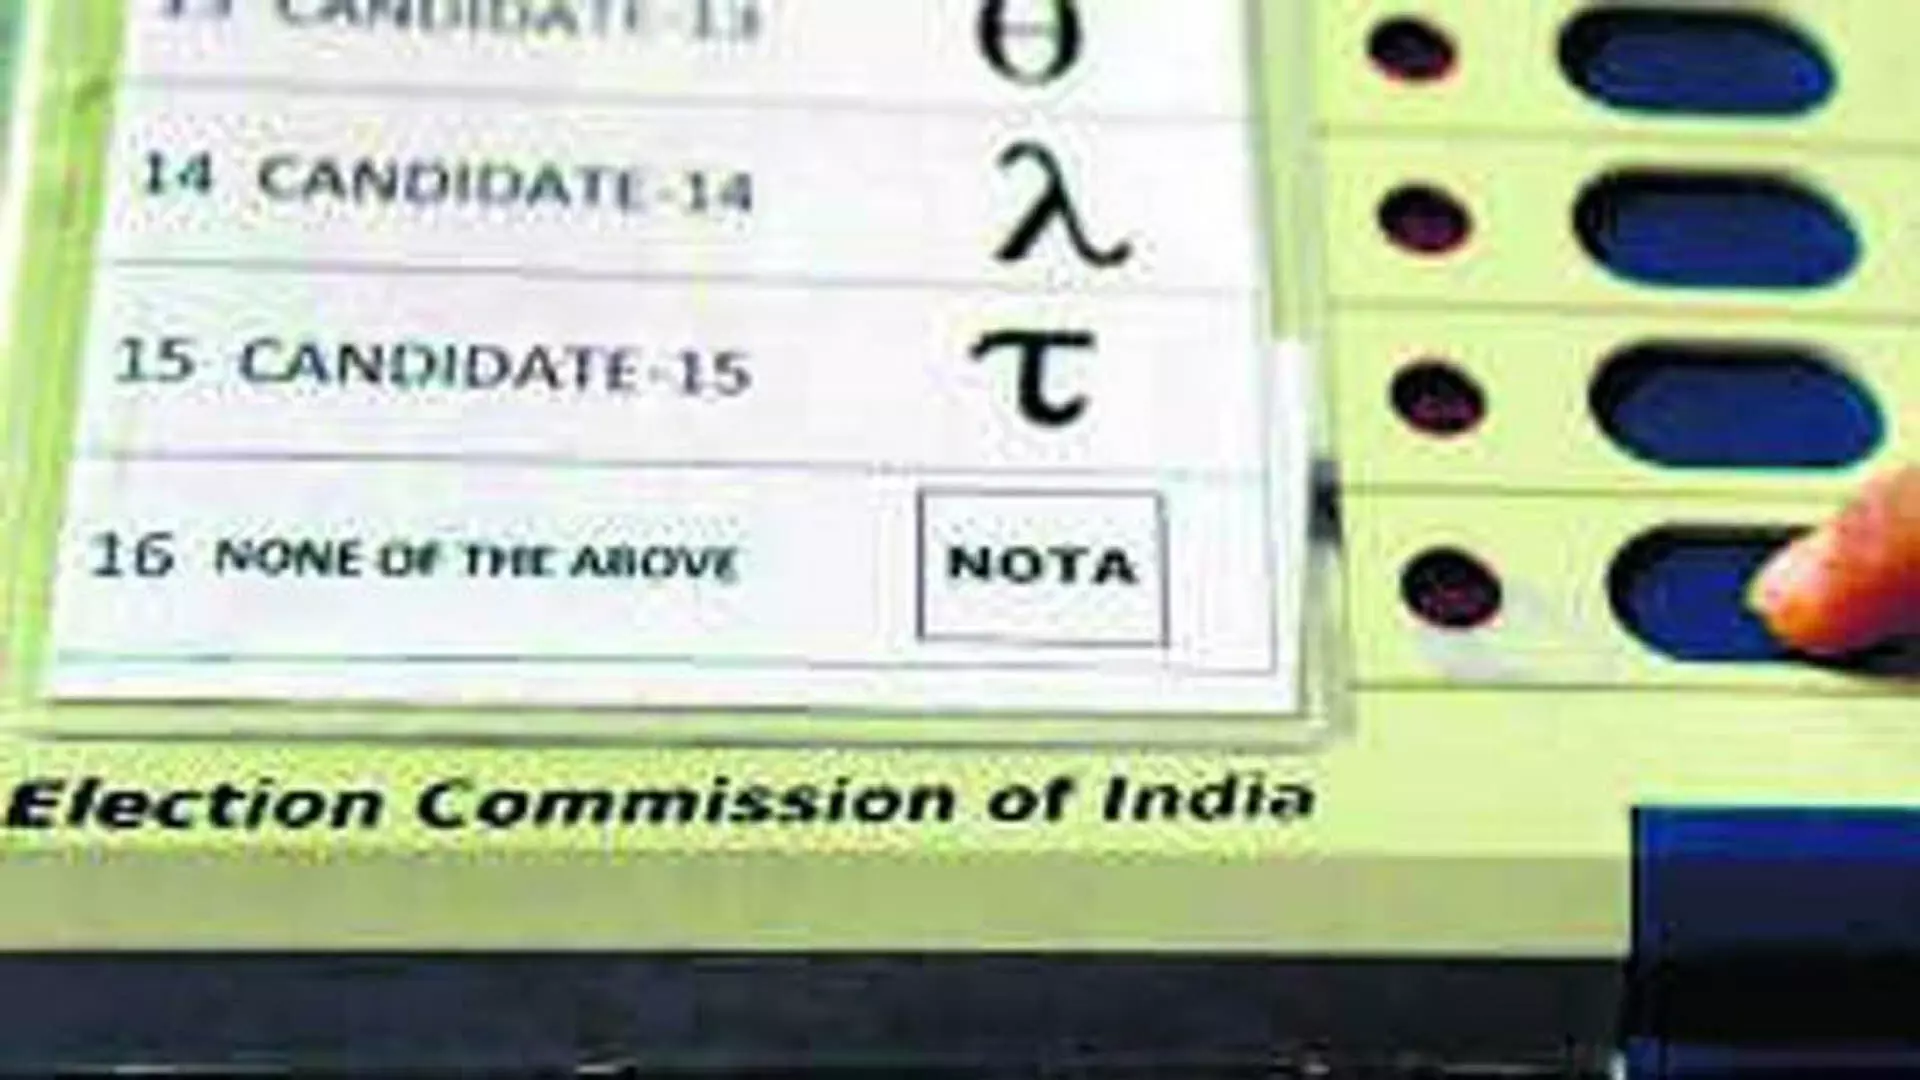 Jammu and Kashmir में 68% उम्मीदवारों को नोटा से भी कम वोट मिले